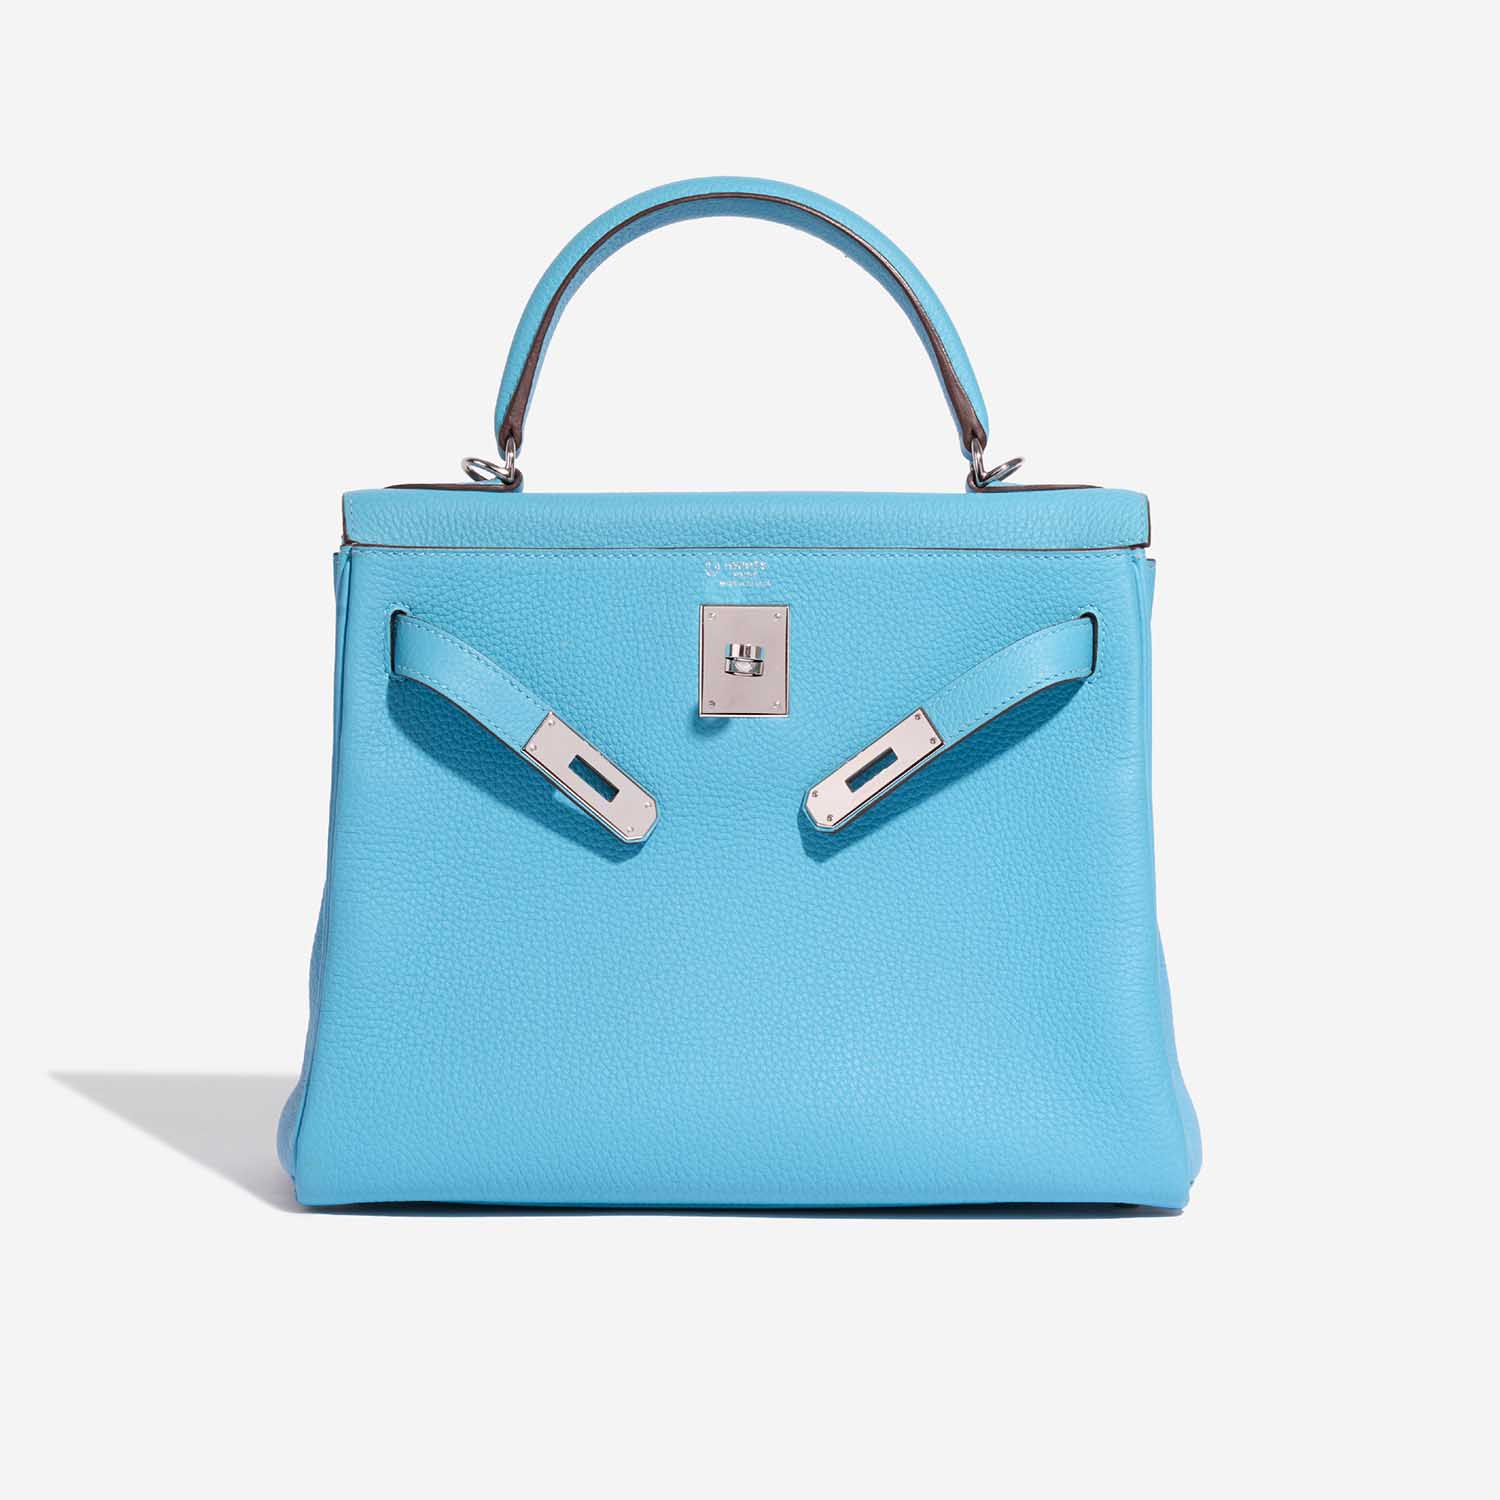 Pre-owned Hermès Tasche Kelly HSS 28 Togo Blue du Nord / Gris Perle Blue Front Open | Verkaufen Sie Ihre Designer-Tasche auf Saclab.com